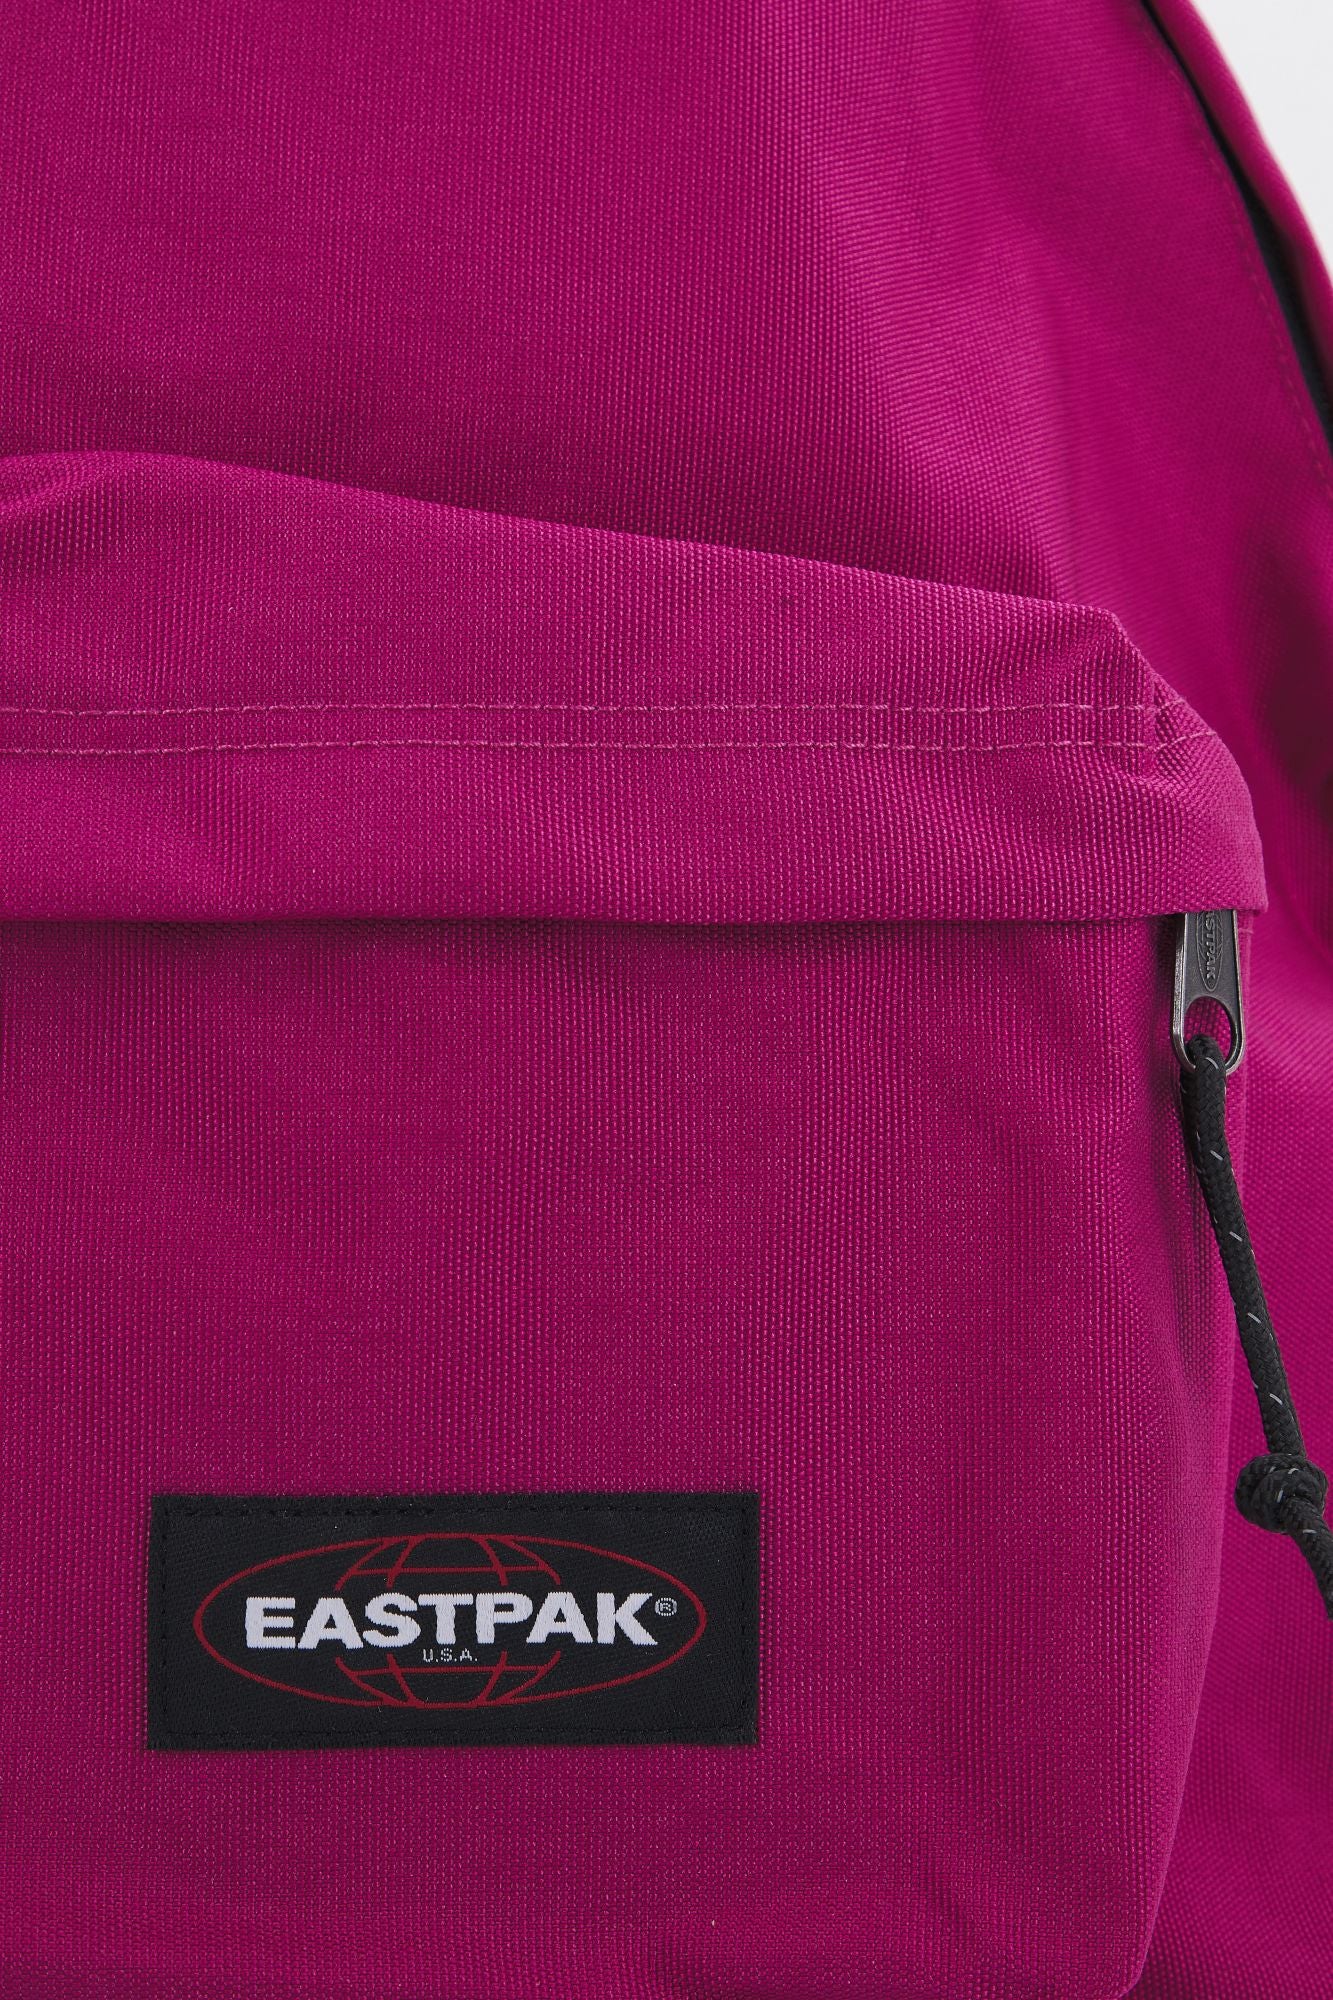 EASTPAK PADDED PAK'R en color ROSA (4)